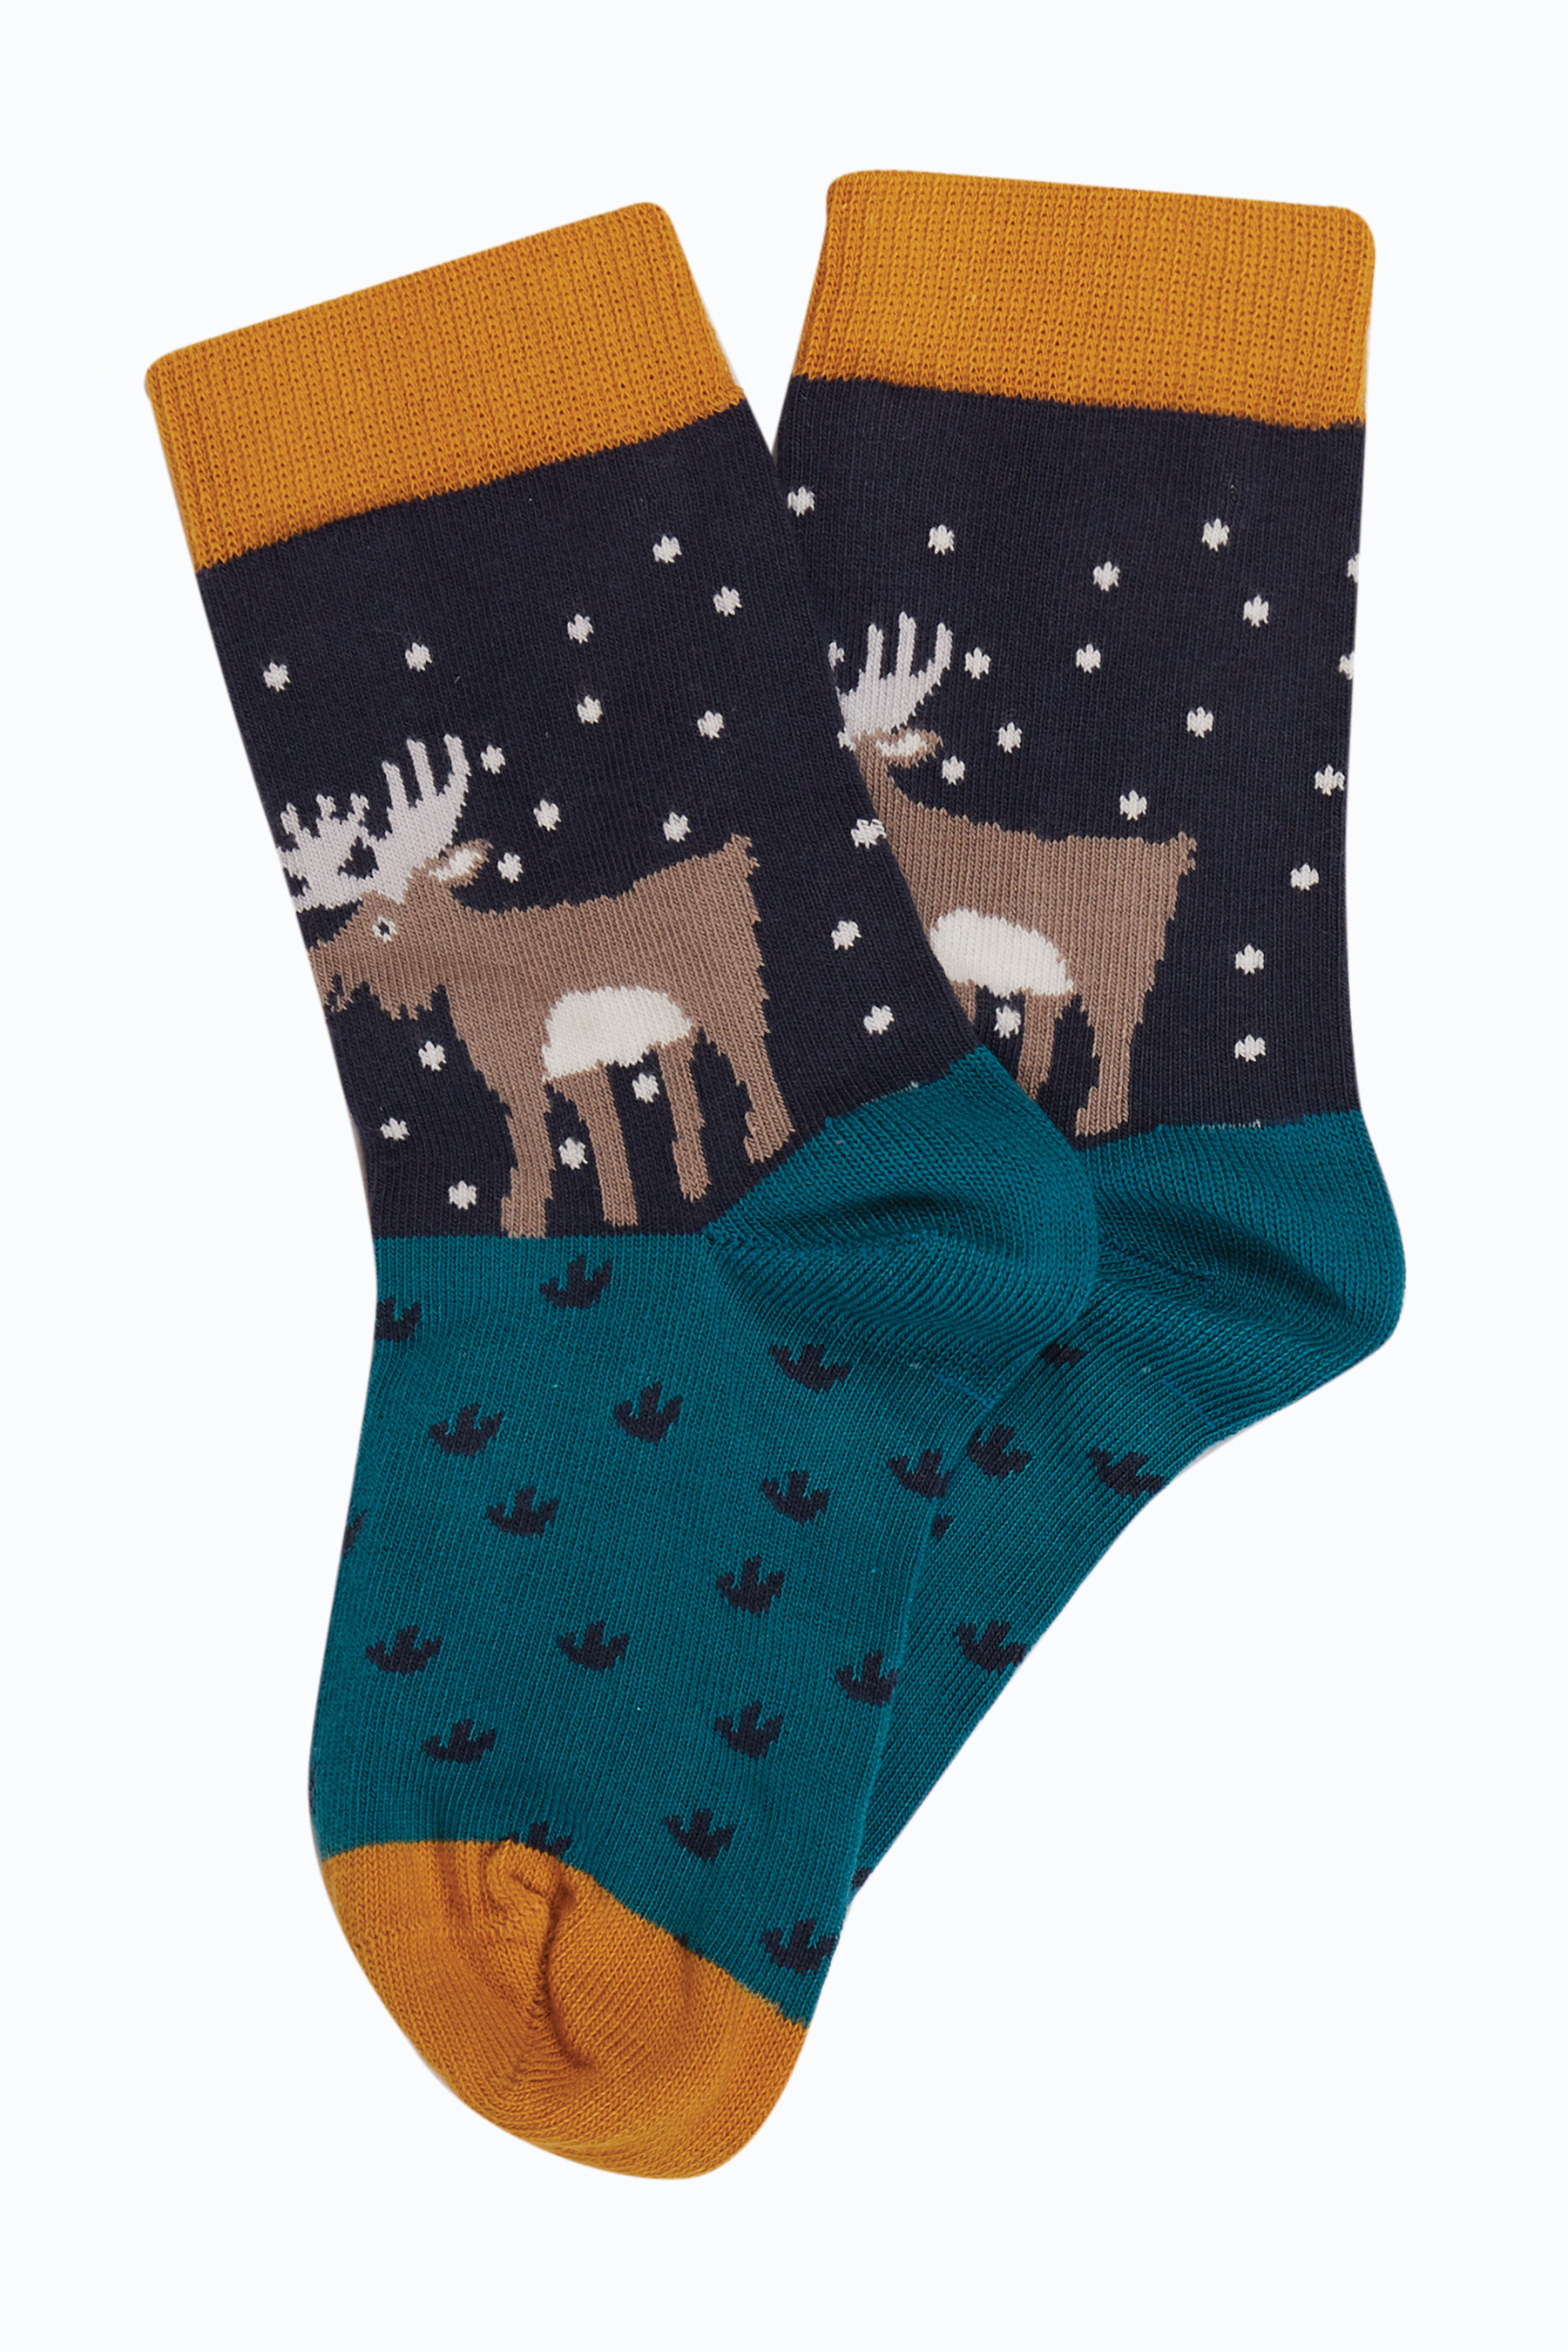 Kinder-Socken im 3er-Pack mit winterlichen Motiven